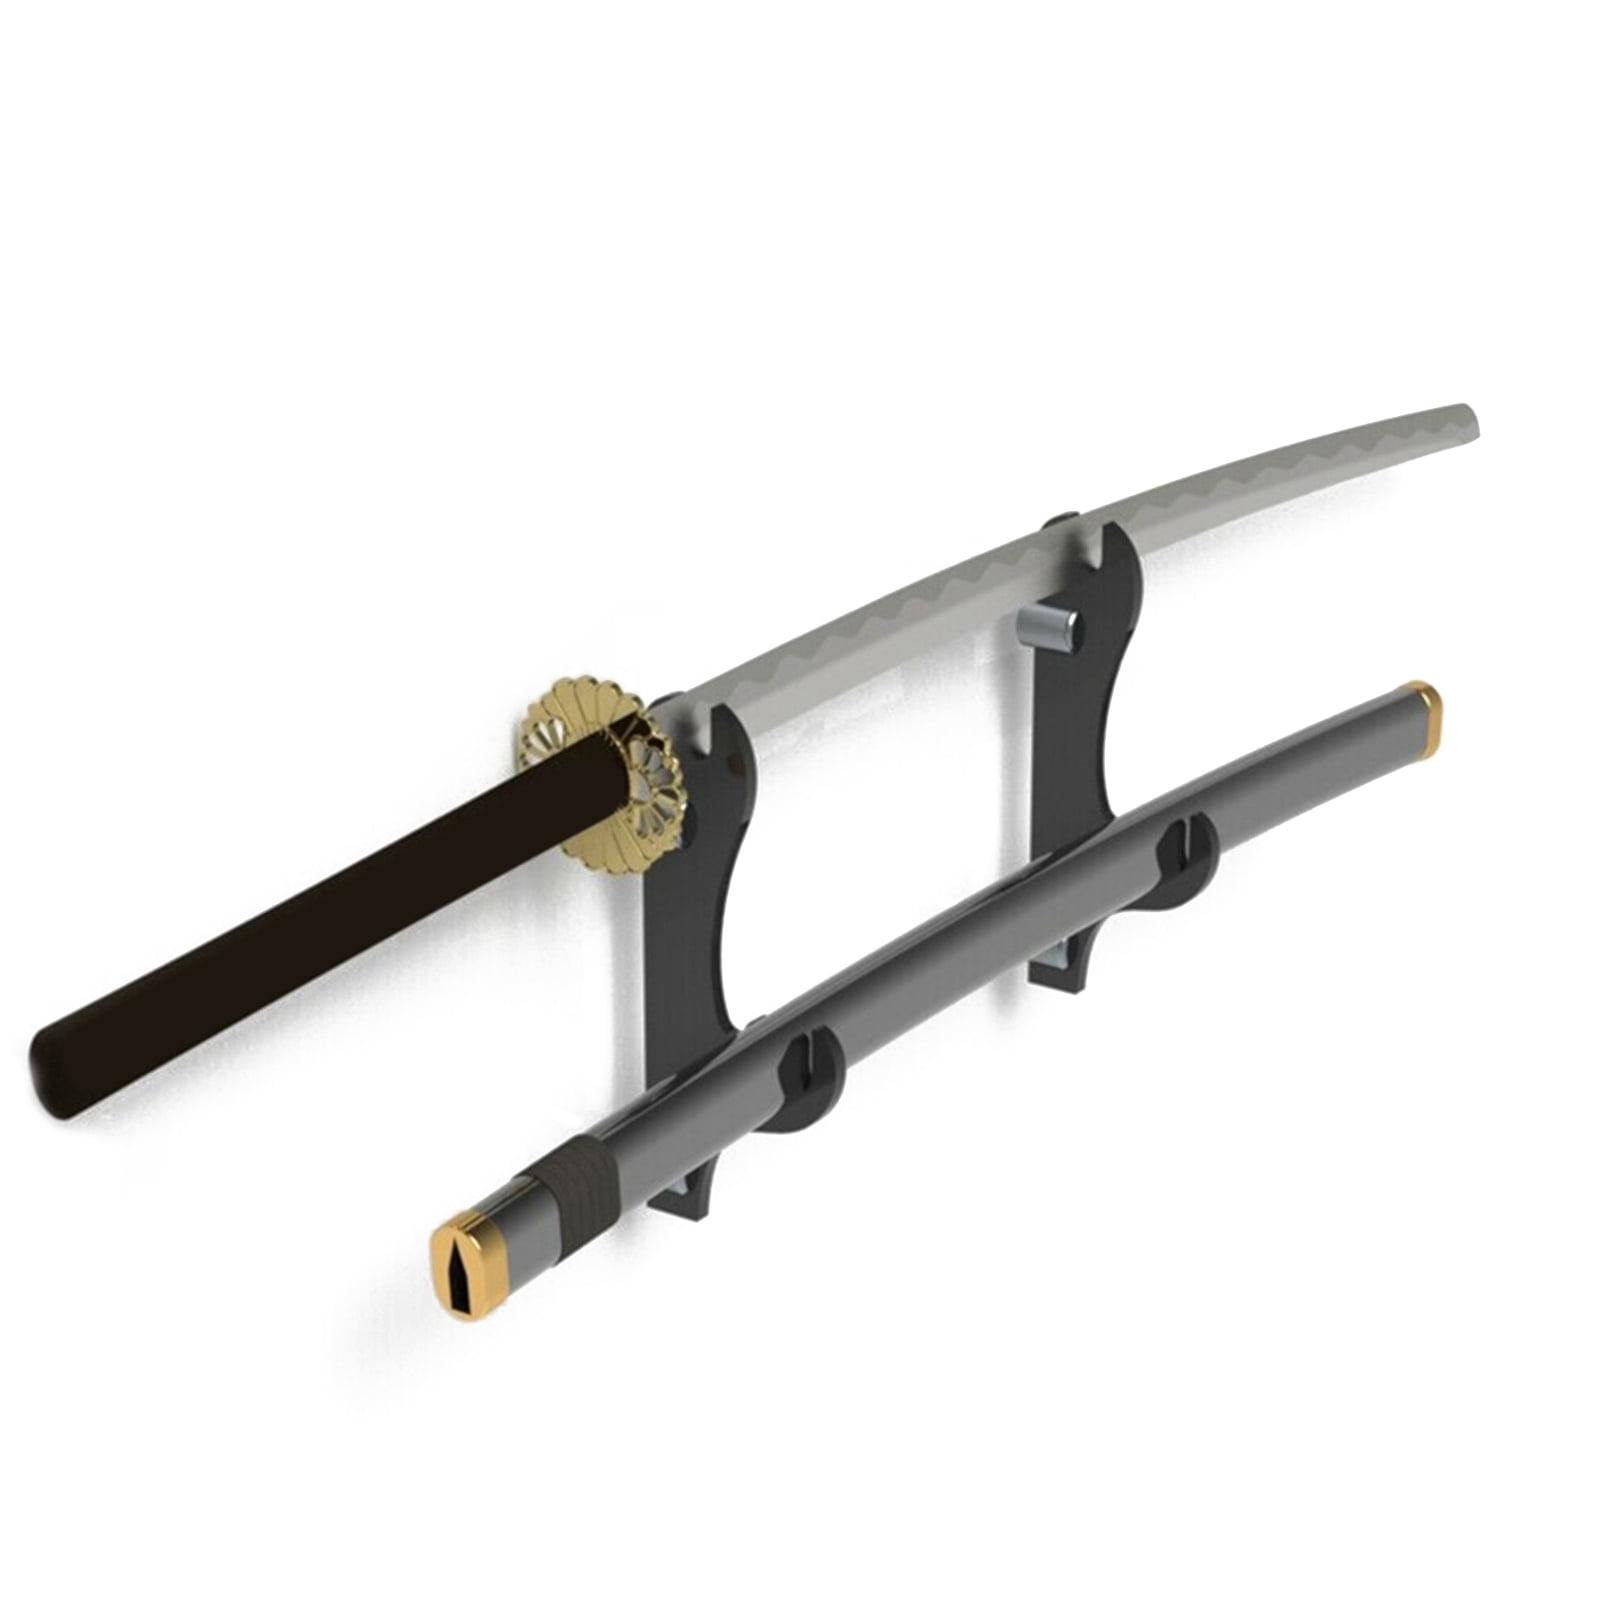 2x Display Cases Deluxe Adjustable Metal Sword Wall Mount Bracket Sword Stand 